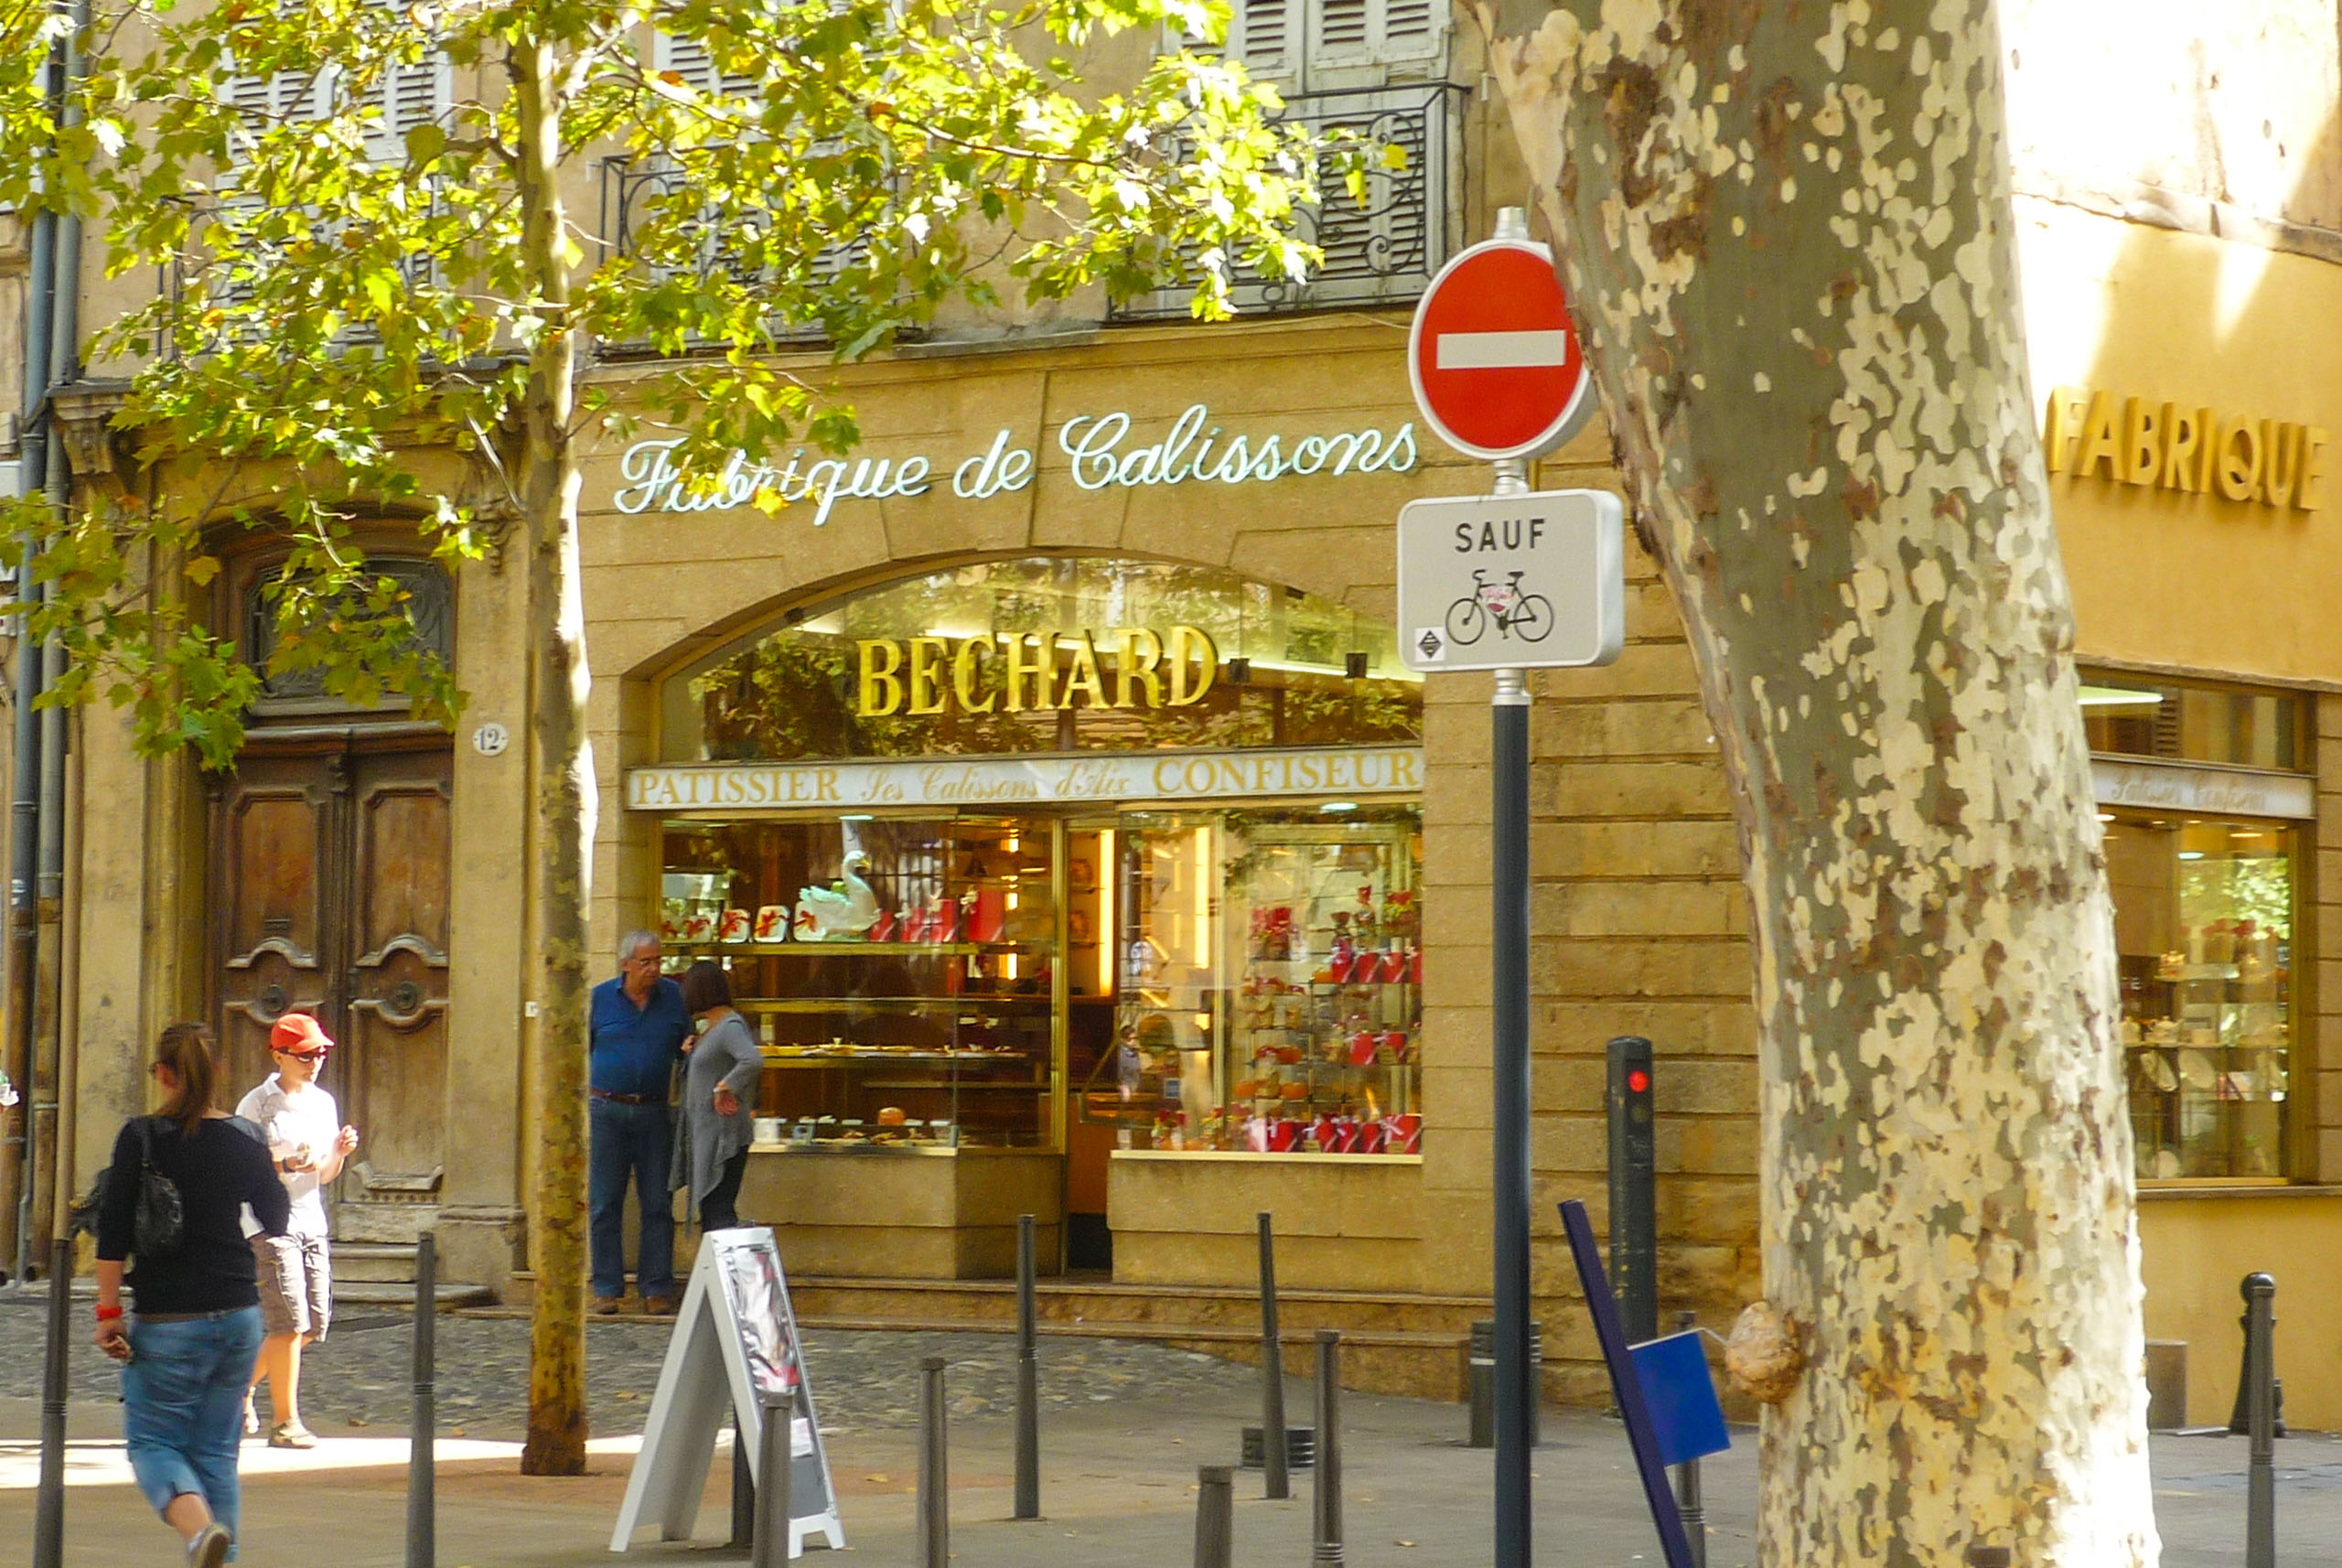 Les calissons • Aix en Provence - Office de Tourisme